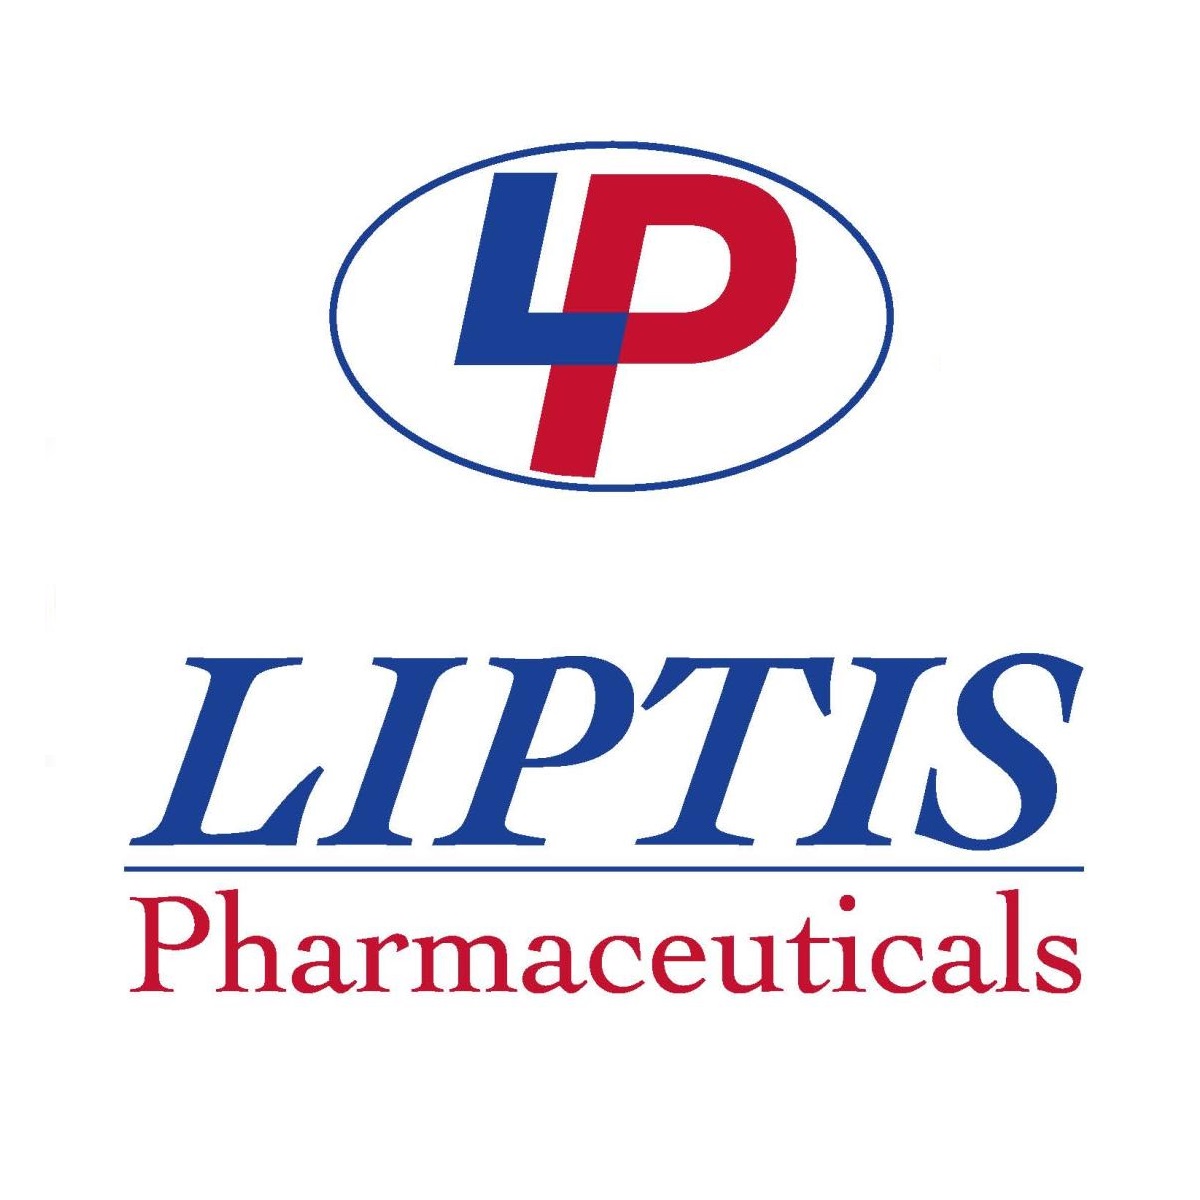 Liptis Pharmaceuticals in Egypt